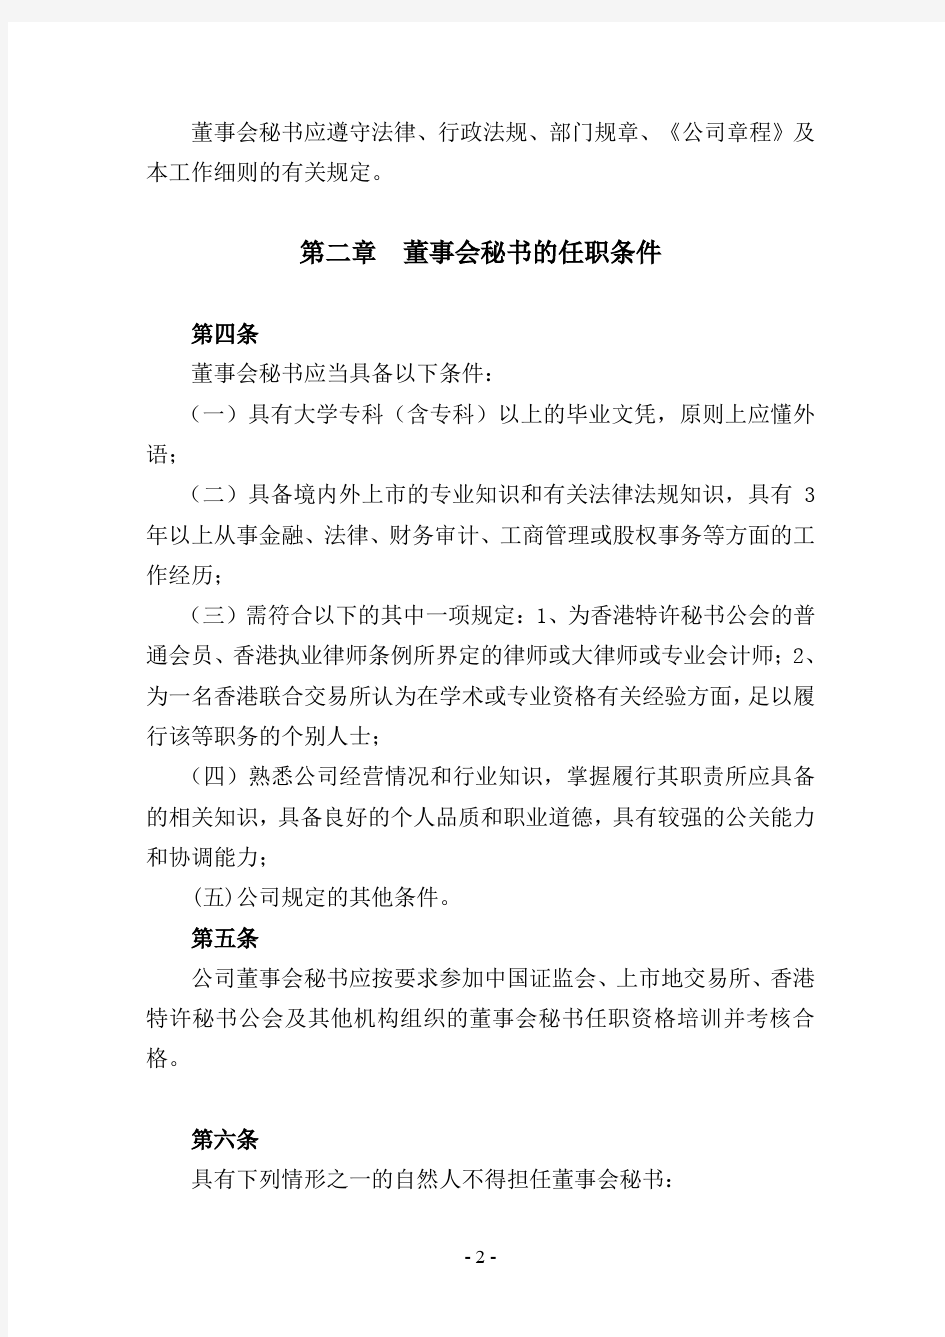 中国神华能源股份有限公司董事会秘书工作细则